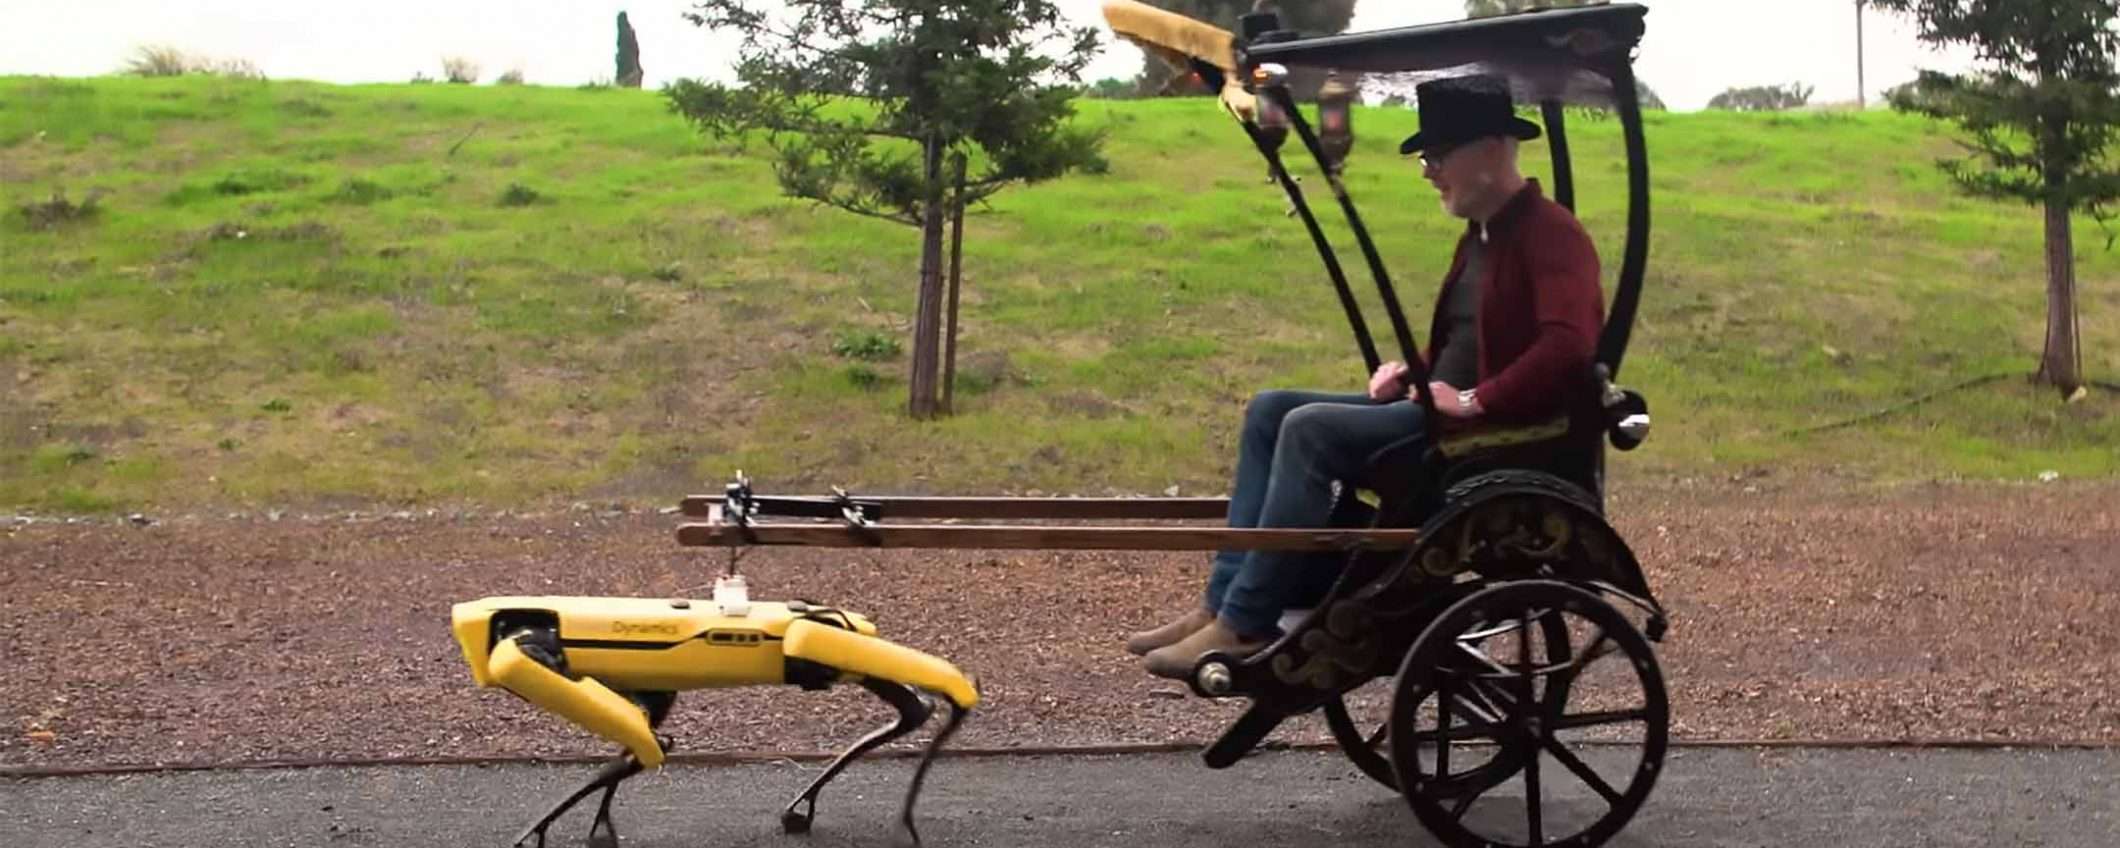 Il robot Spot di Boston Dynamics e il risciò